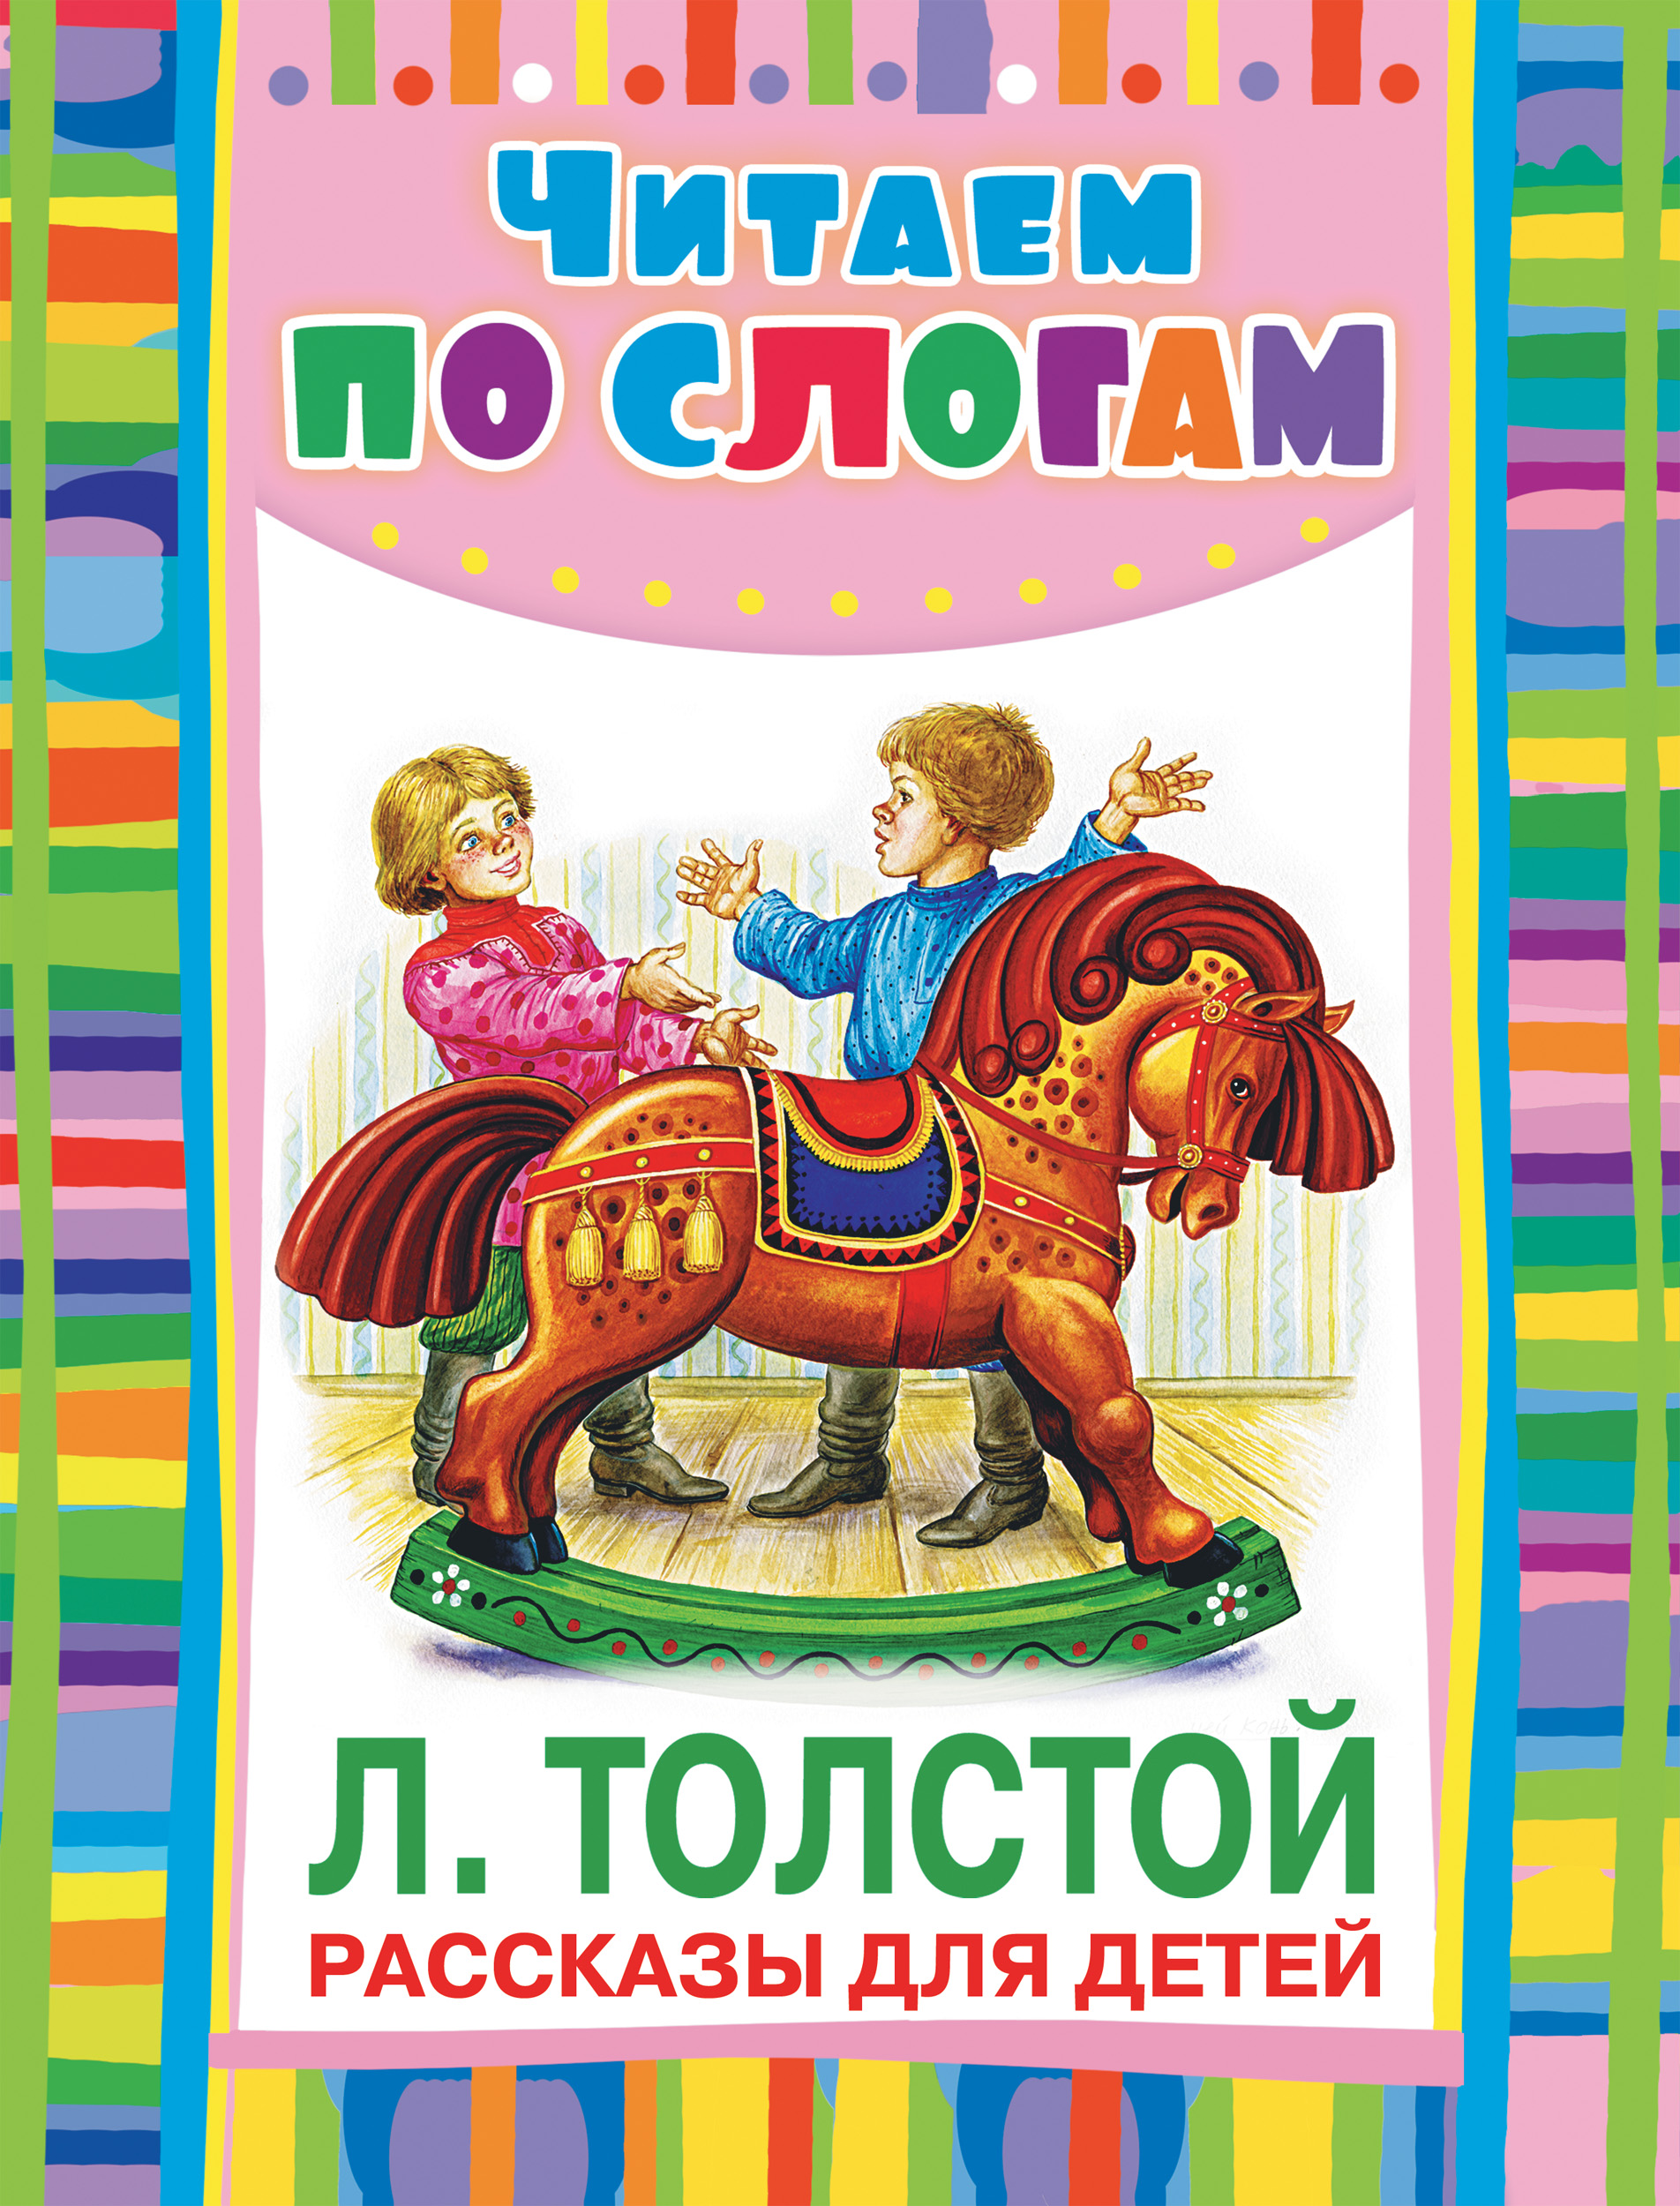 Толстой был у пети и миши конь. Толстой книги для детей. Детские книги Толстого Льва Николаевича. Книга детям (толстой л.н.). Рассказылдя детей толстой.